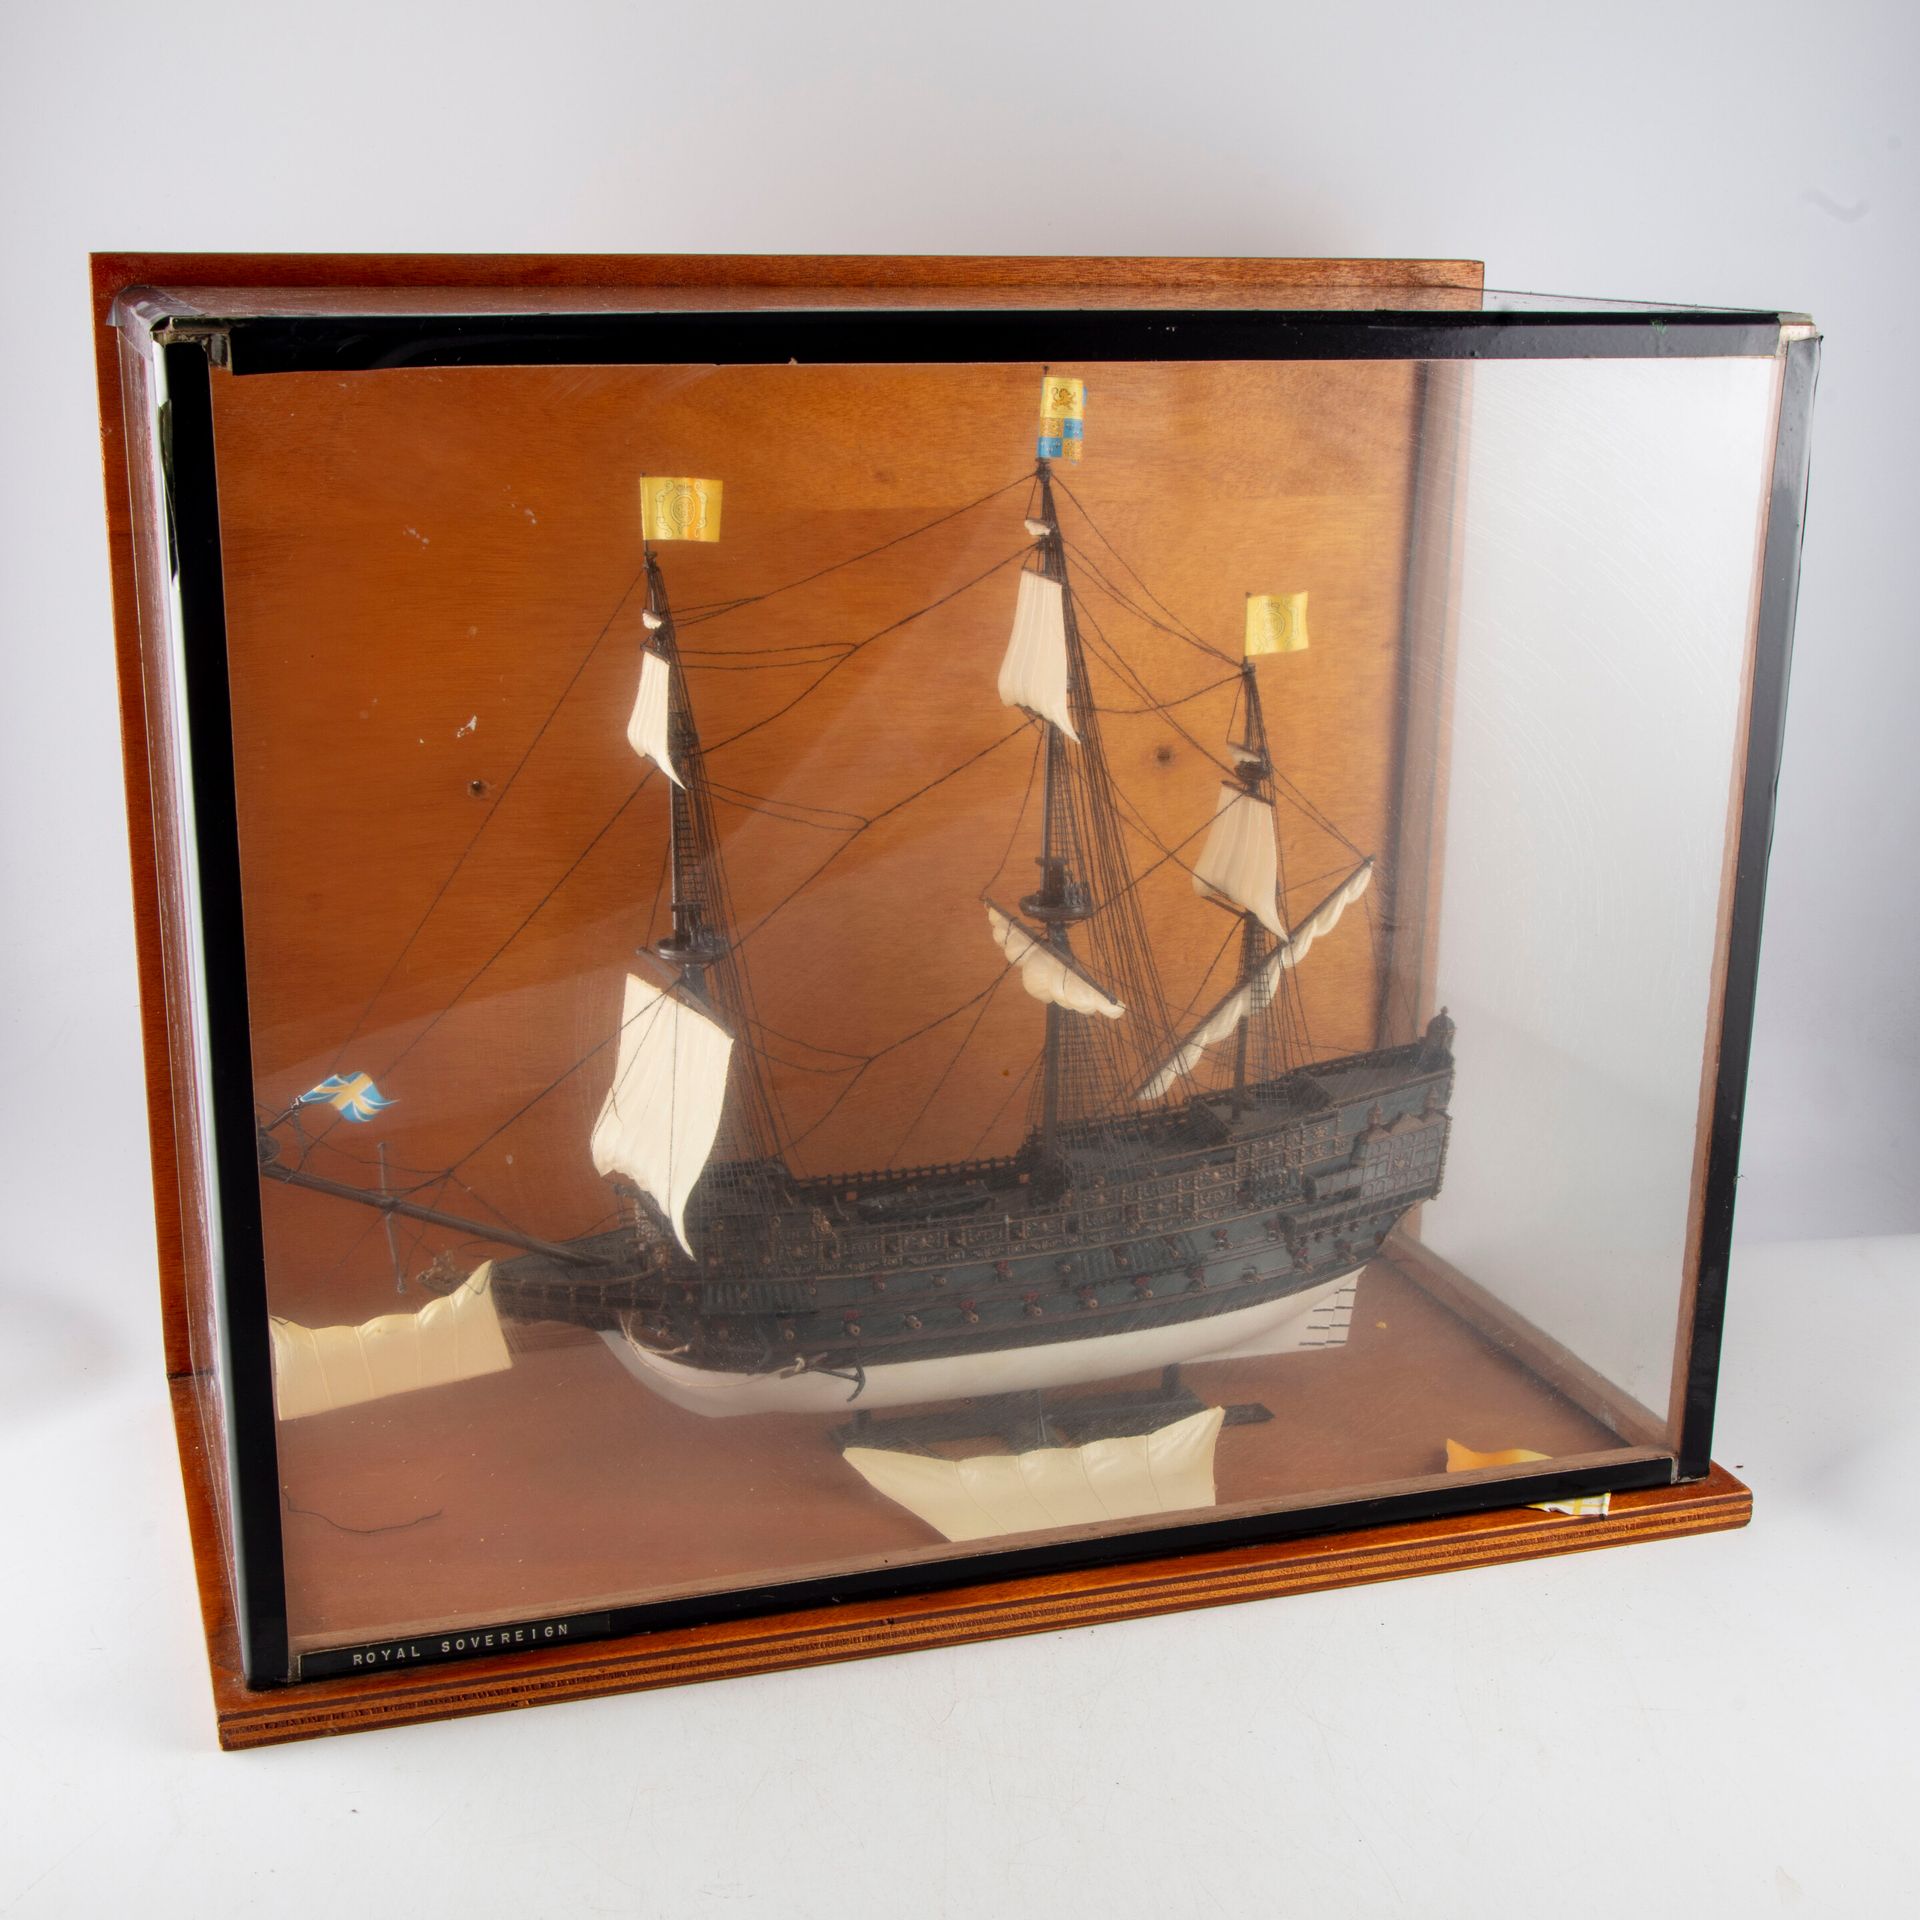 Null Maqueta de barco "Royal Sovereign 1637" en madera pintada

Bajo el cristal
&hellip;